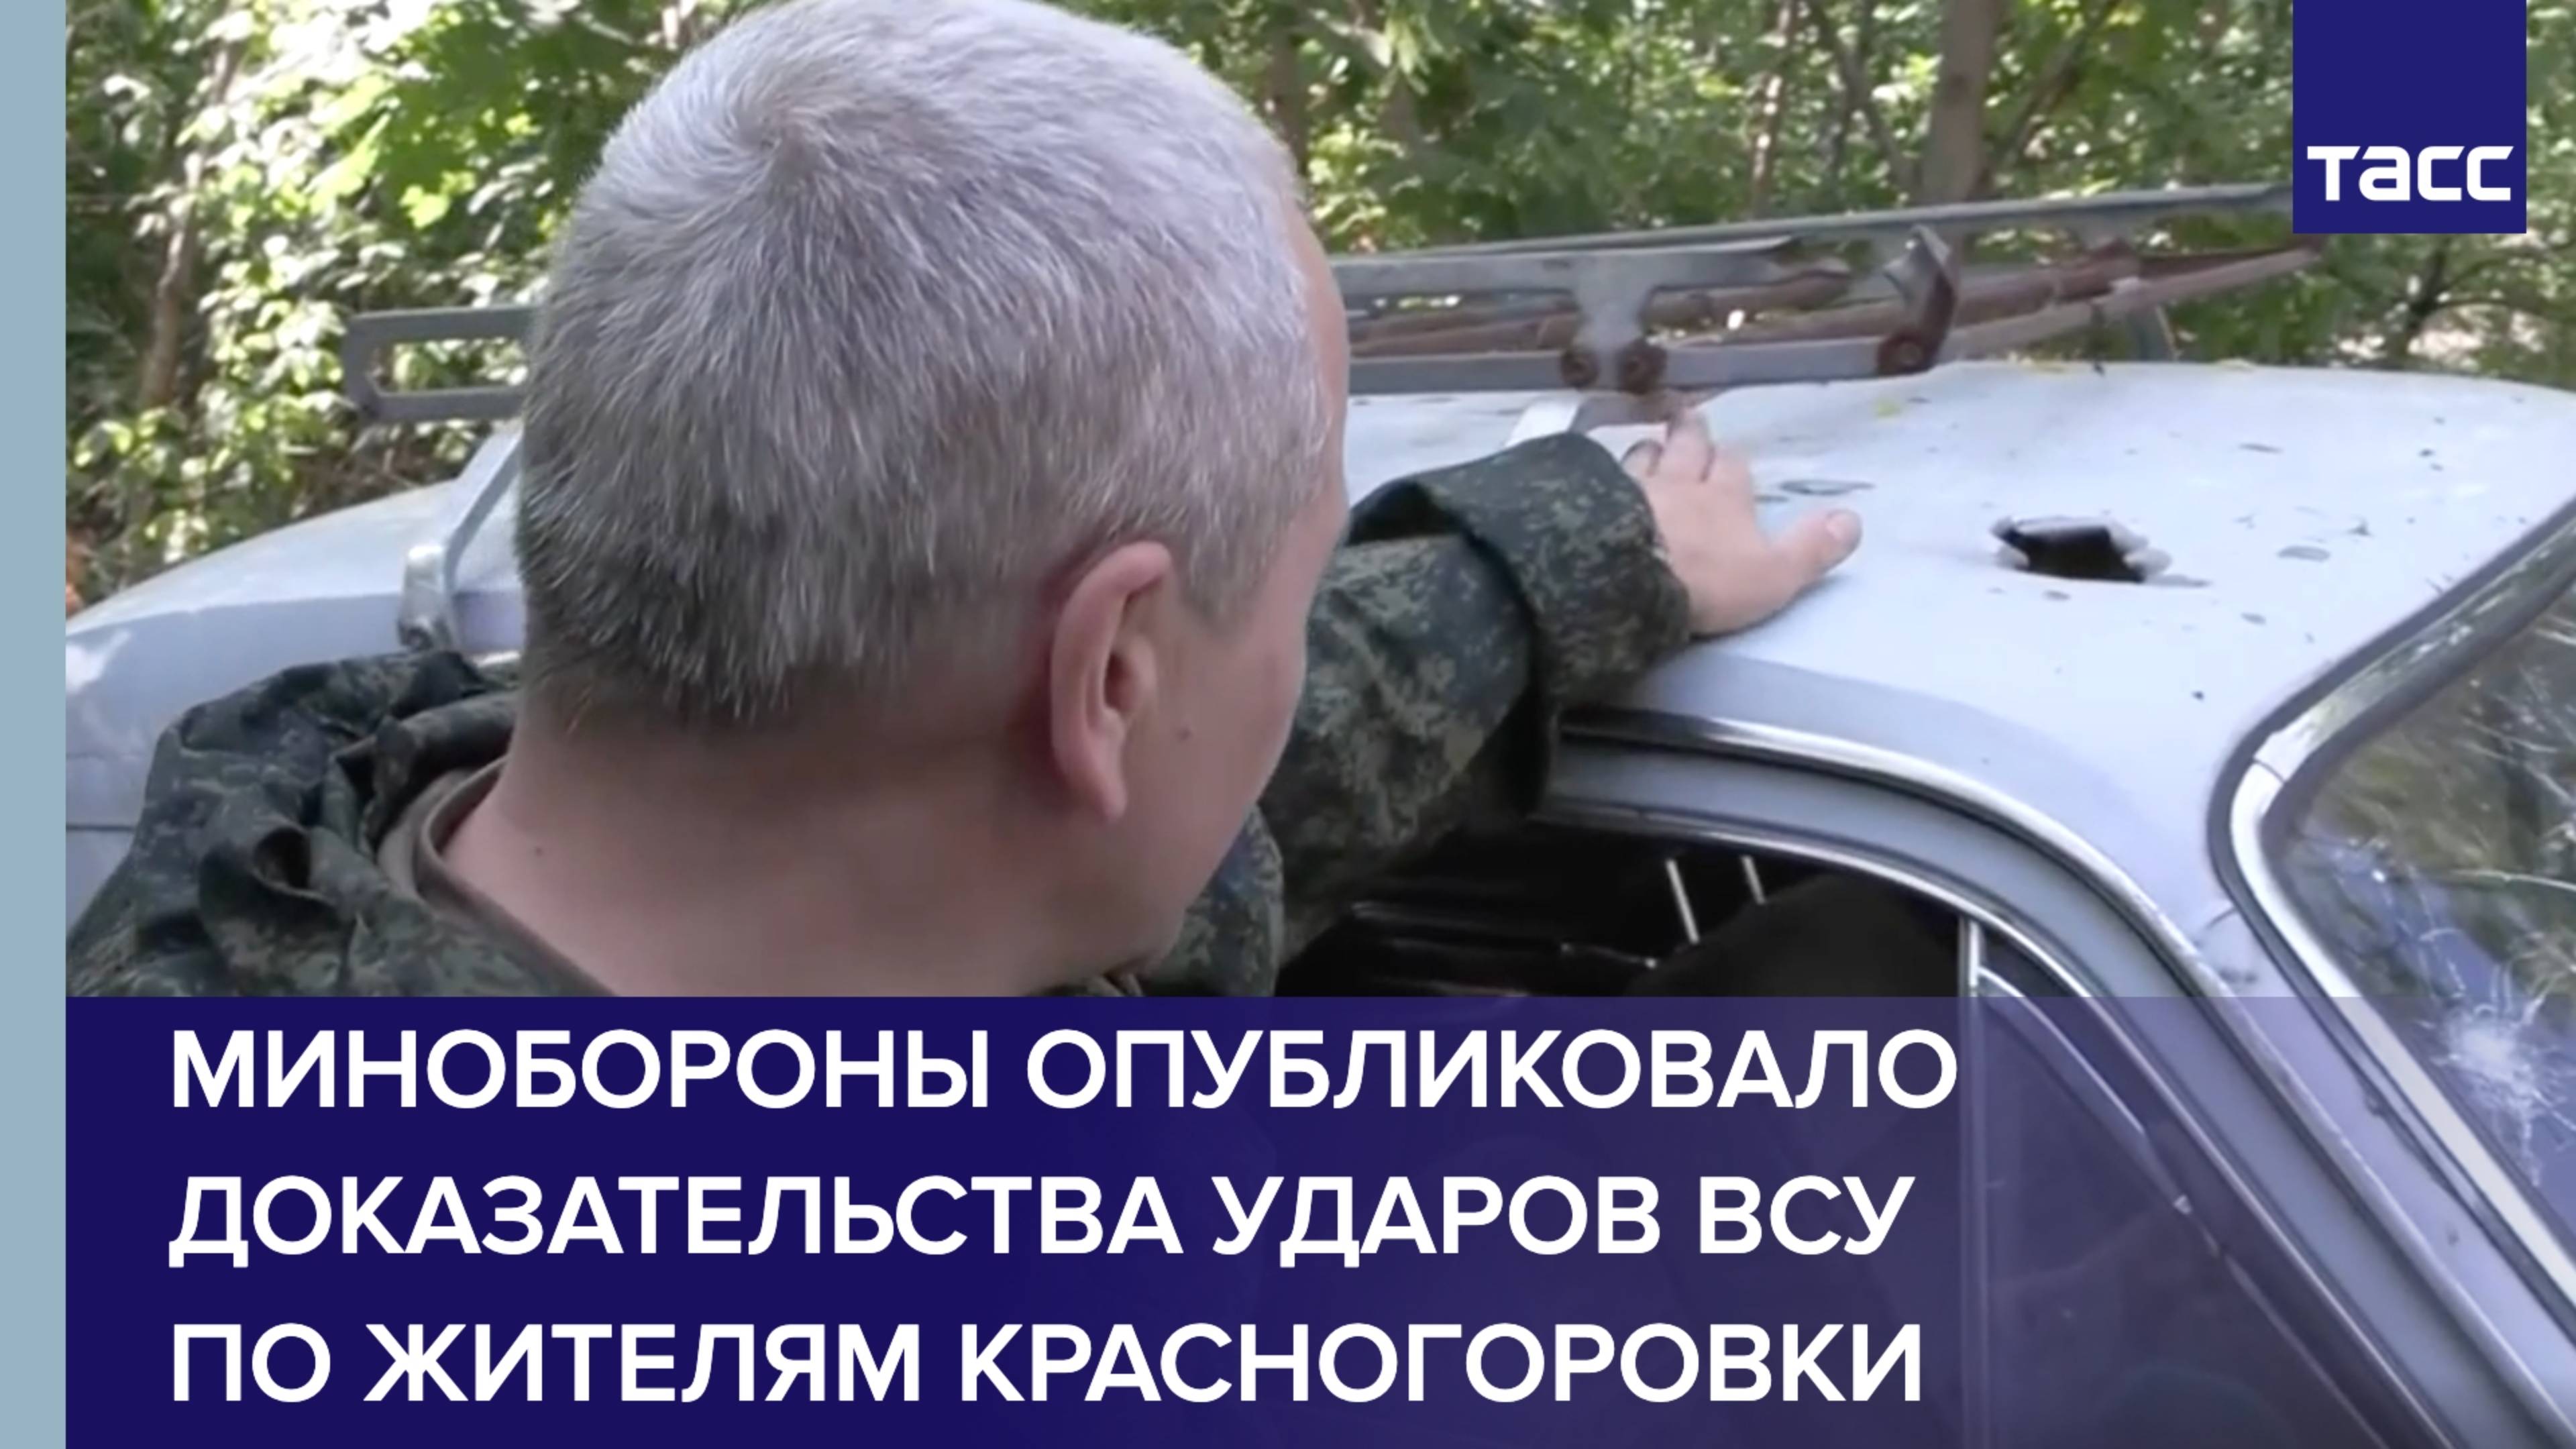 Минобороны опубликовало доказательства ударов ВСУ по жителям Красногоровки